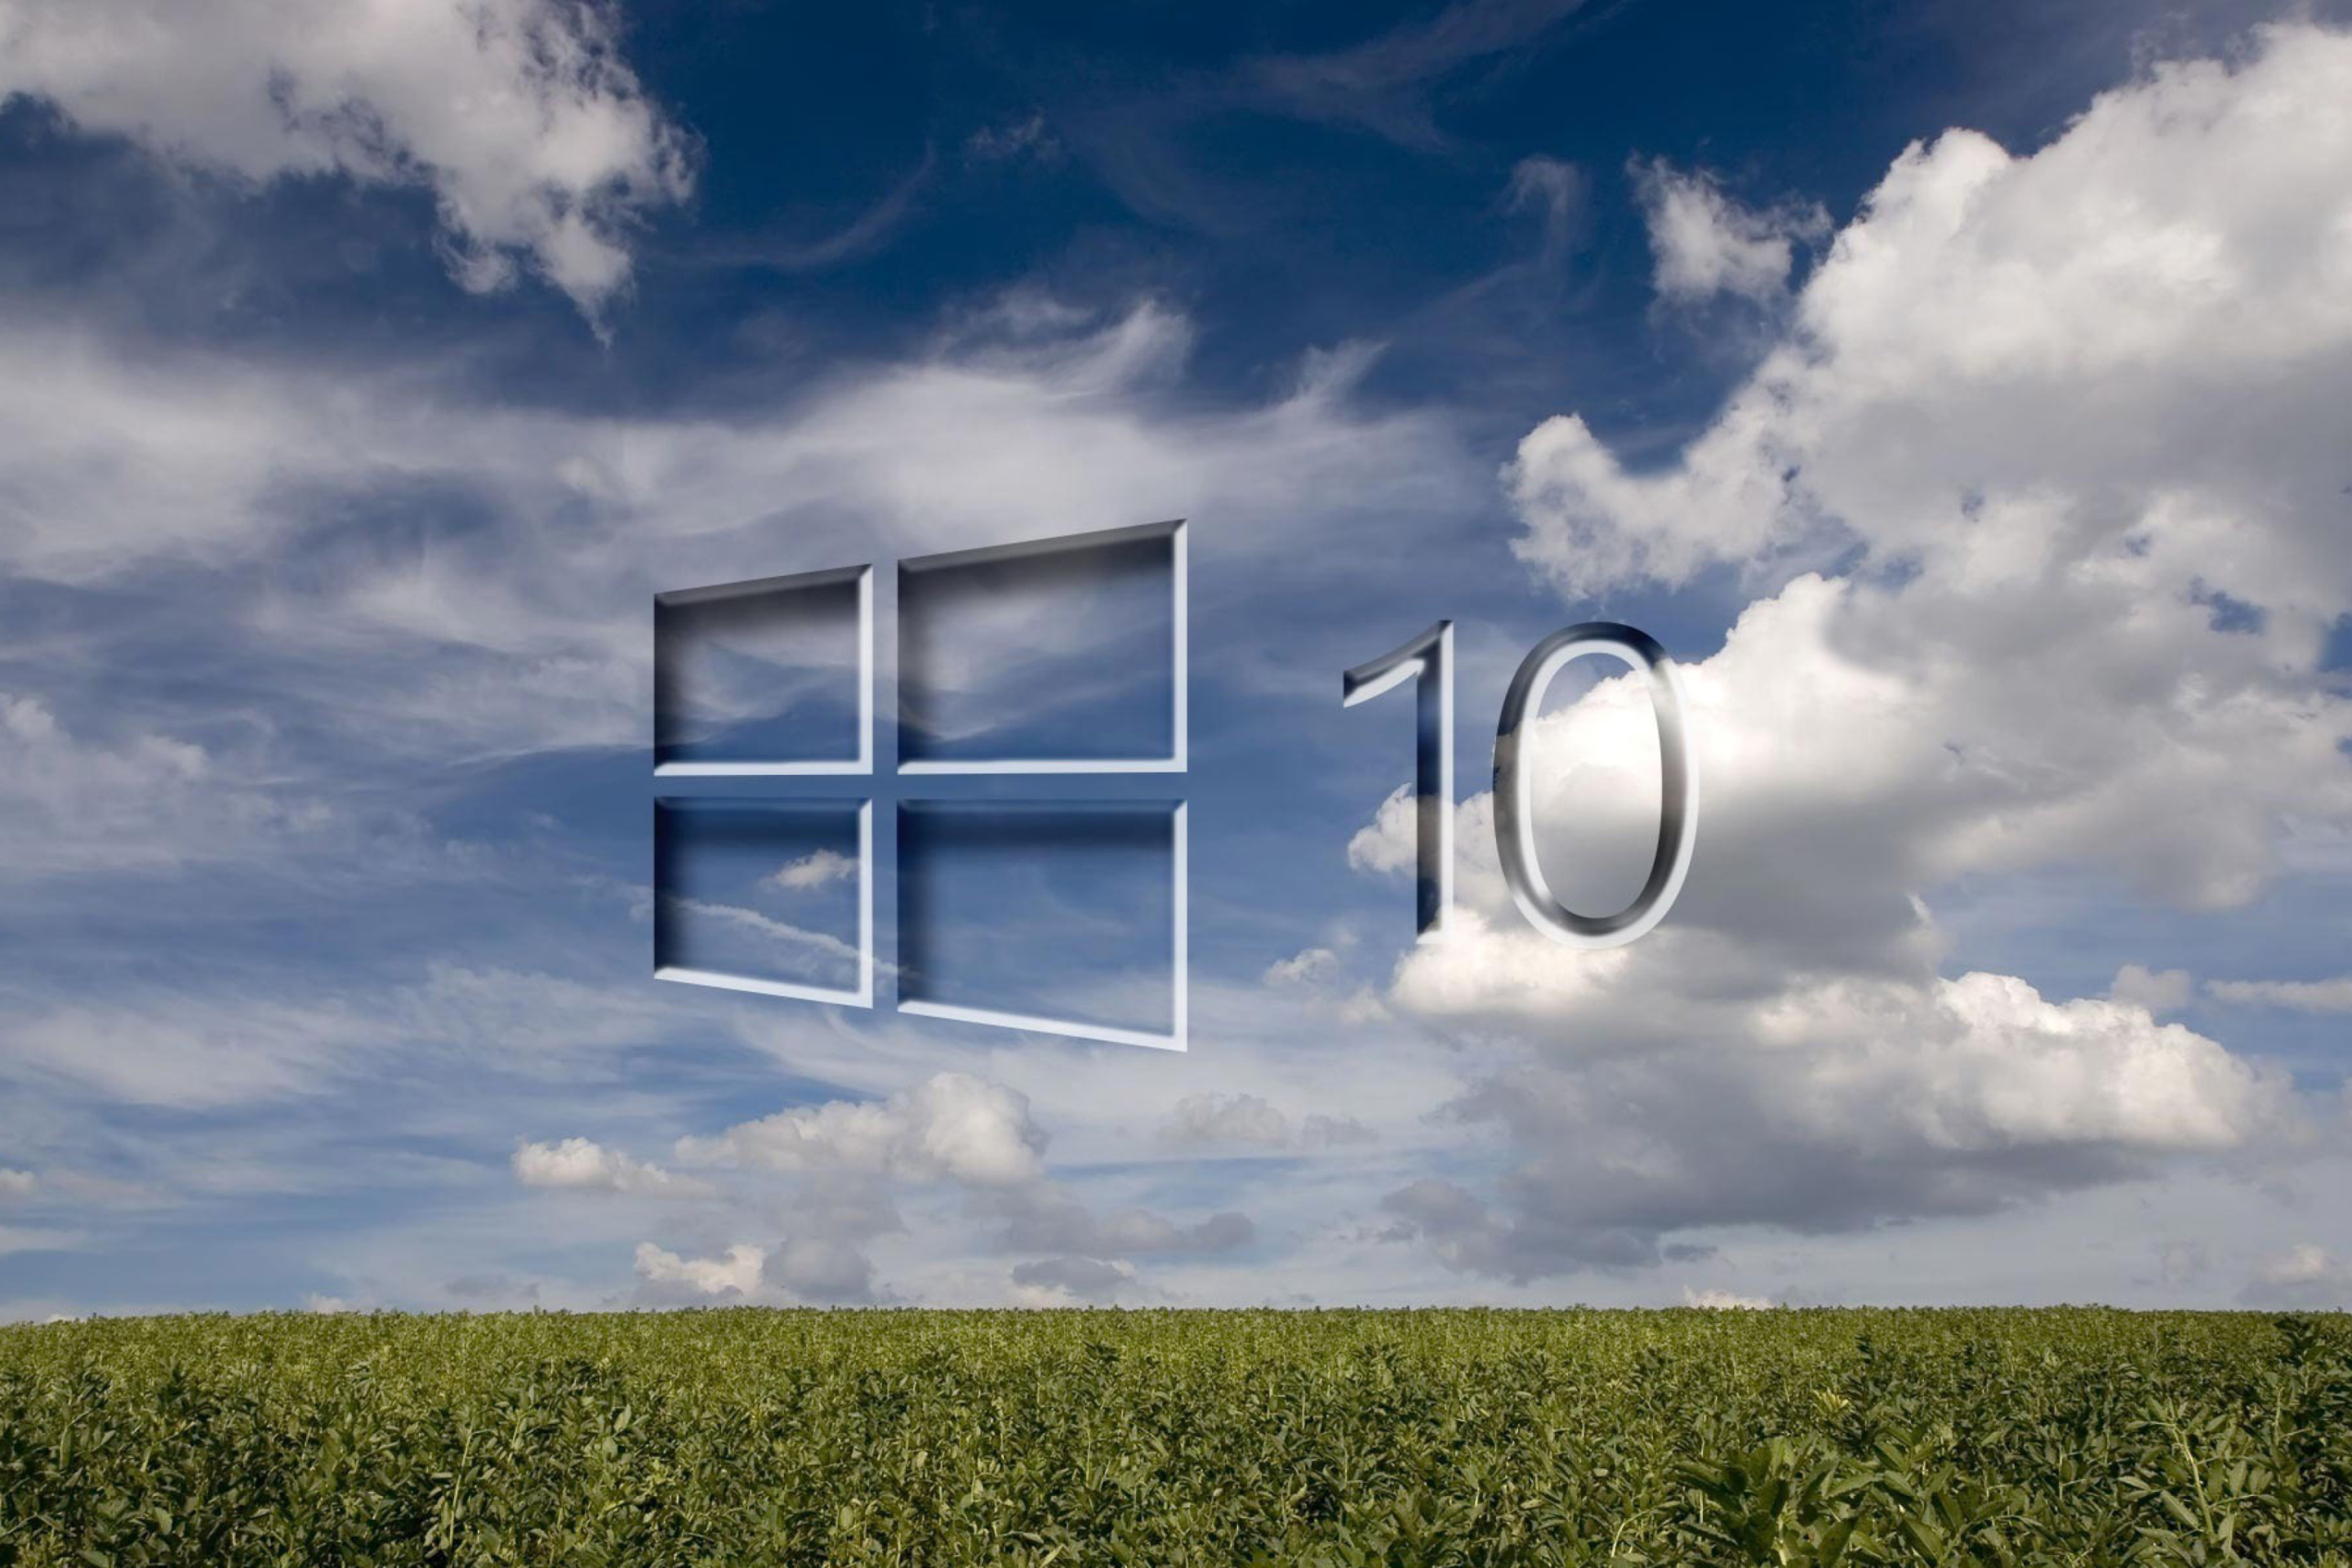 Windows 10 Grass Field wallpaper 2880x1920